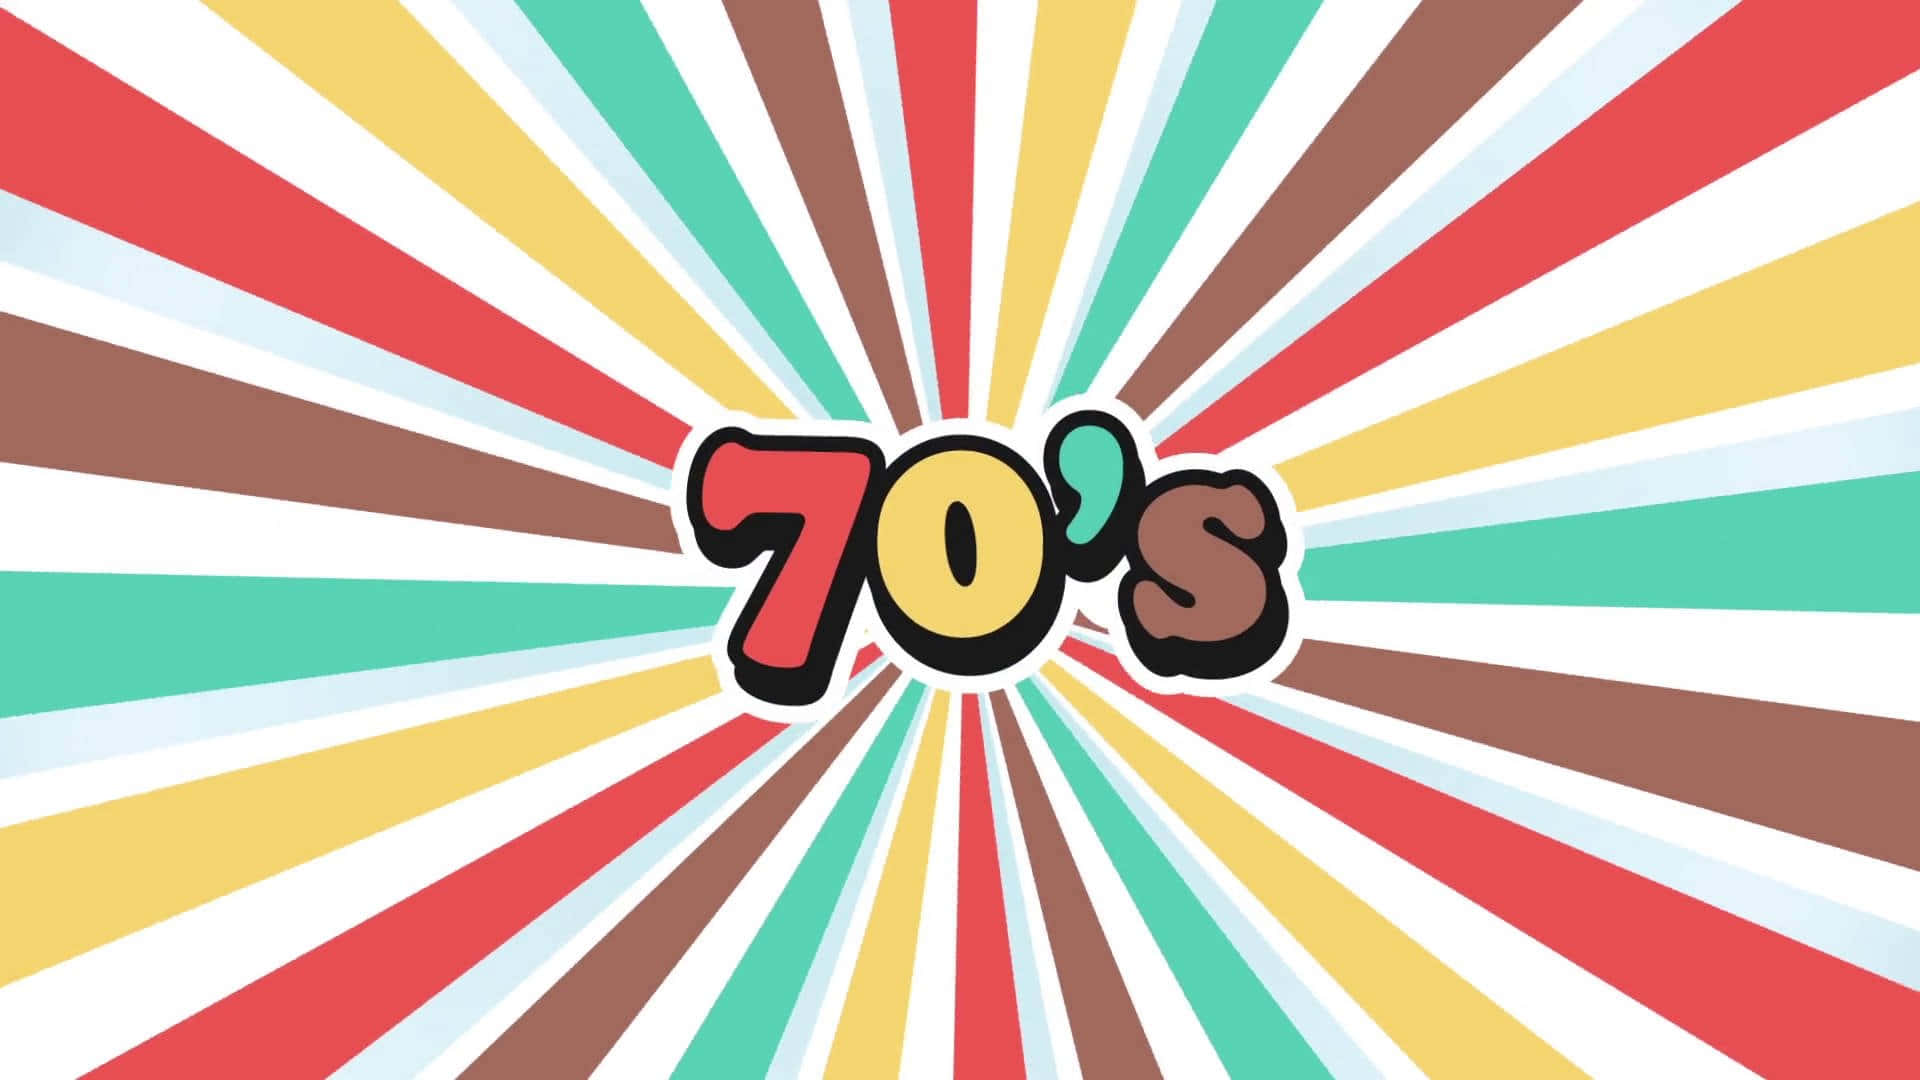 Den 70's - et farverigt strikket baggrund med ordet 70's